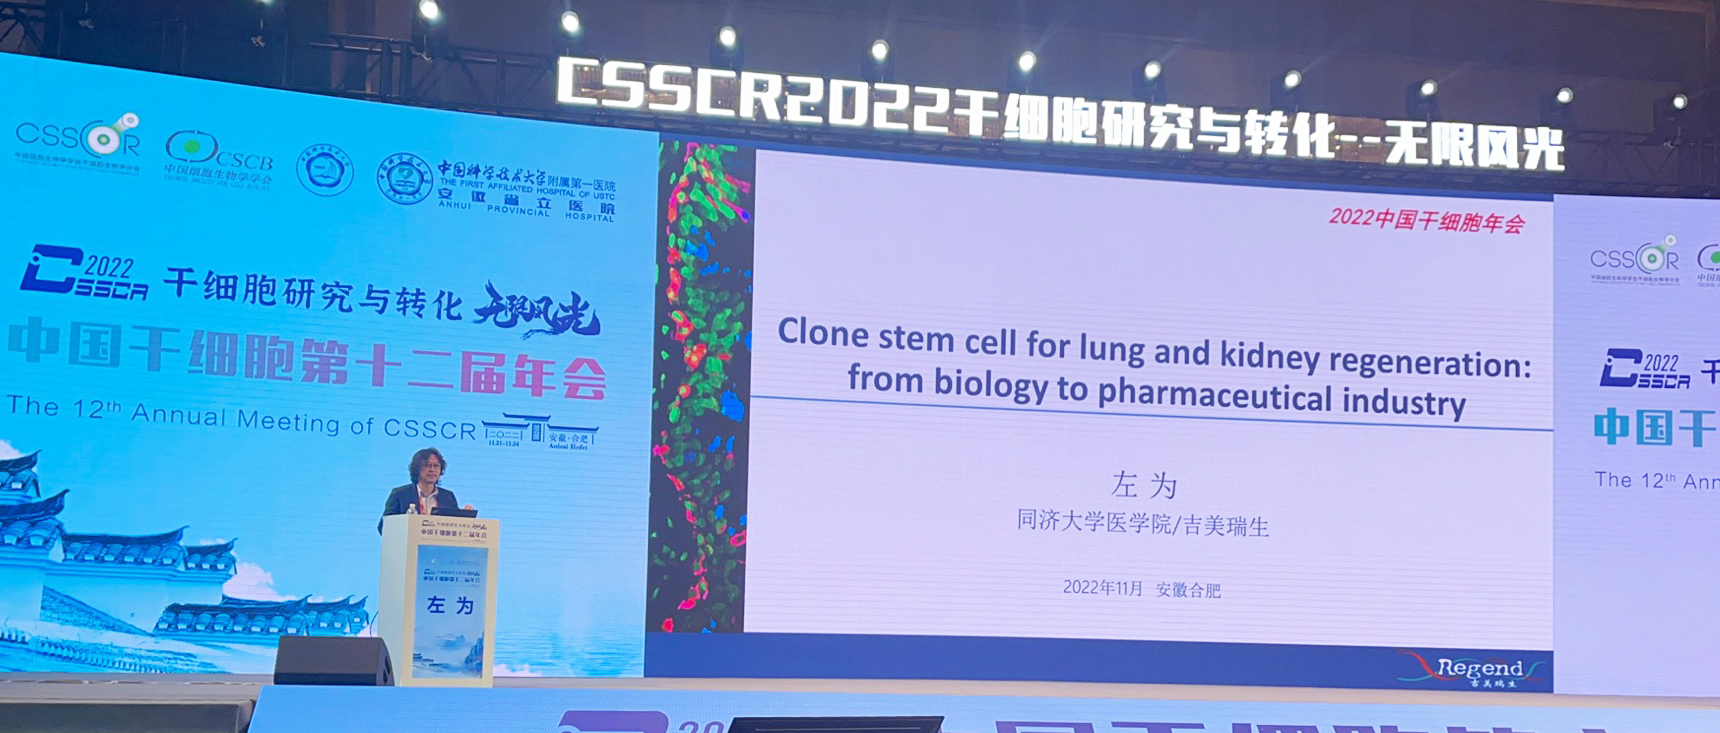 8、CSSCR 2022 中国干细胞第十二届年会.jpg